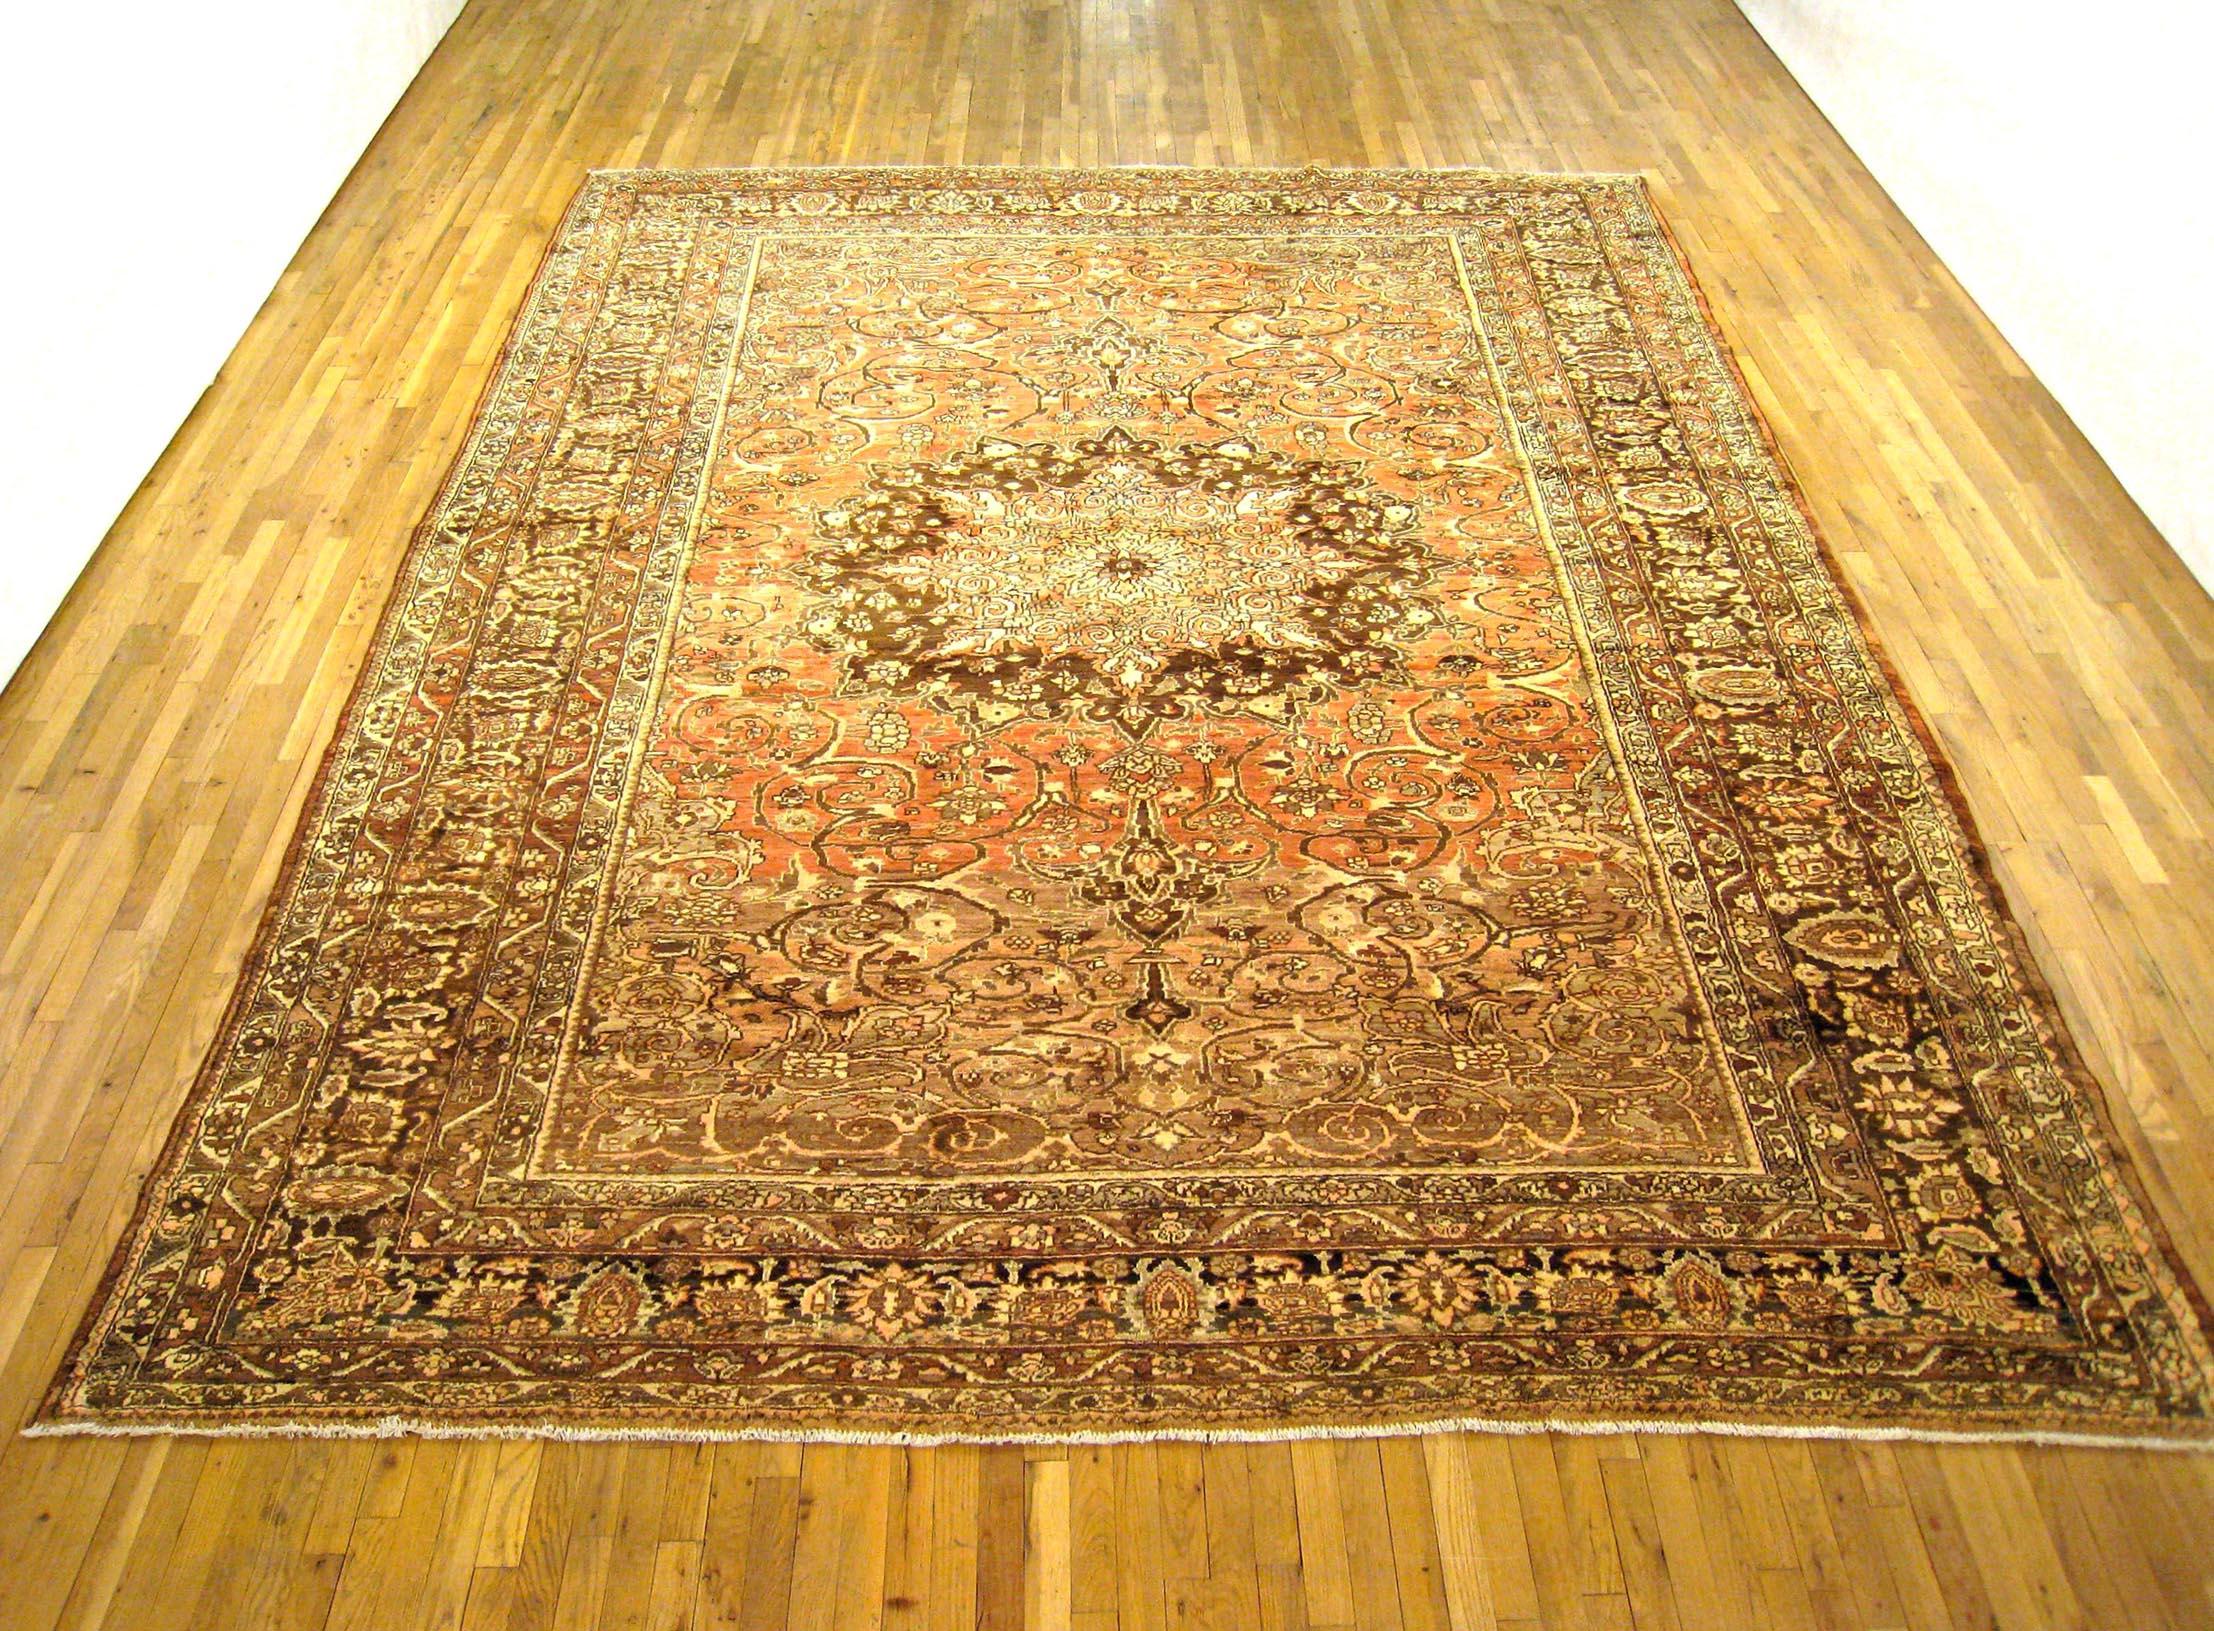 Antiker persischer Baktiari Orientteppich, Raumgröße

Ein antiker Baktiari Orientteppich, Größe 13'4 x 10'0, um 1920. Dieser hübsche handgewebte geometrische Teppich zeigt ein zentrales Medaillon in einem weichen roten Feld. Das zentrale Feld ist